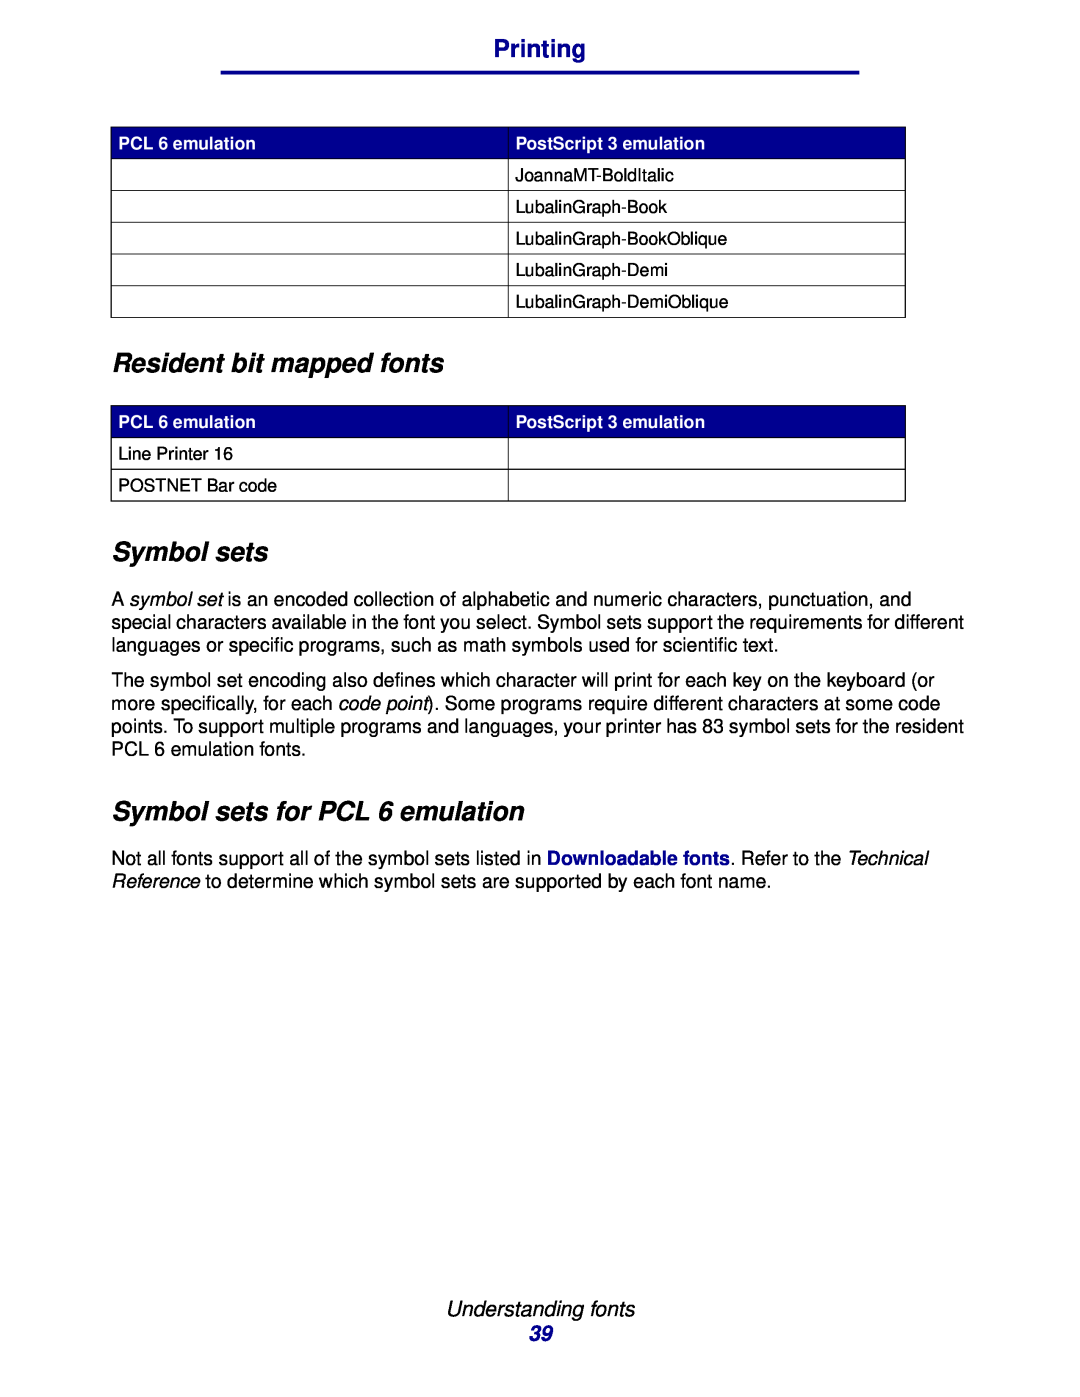 Lexmark 912 manual Resident bit mapped fonts, Symbol sets for PCL 6 emulation, Printing, Understanding fonts 